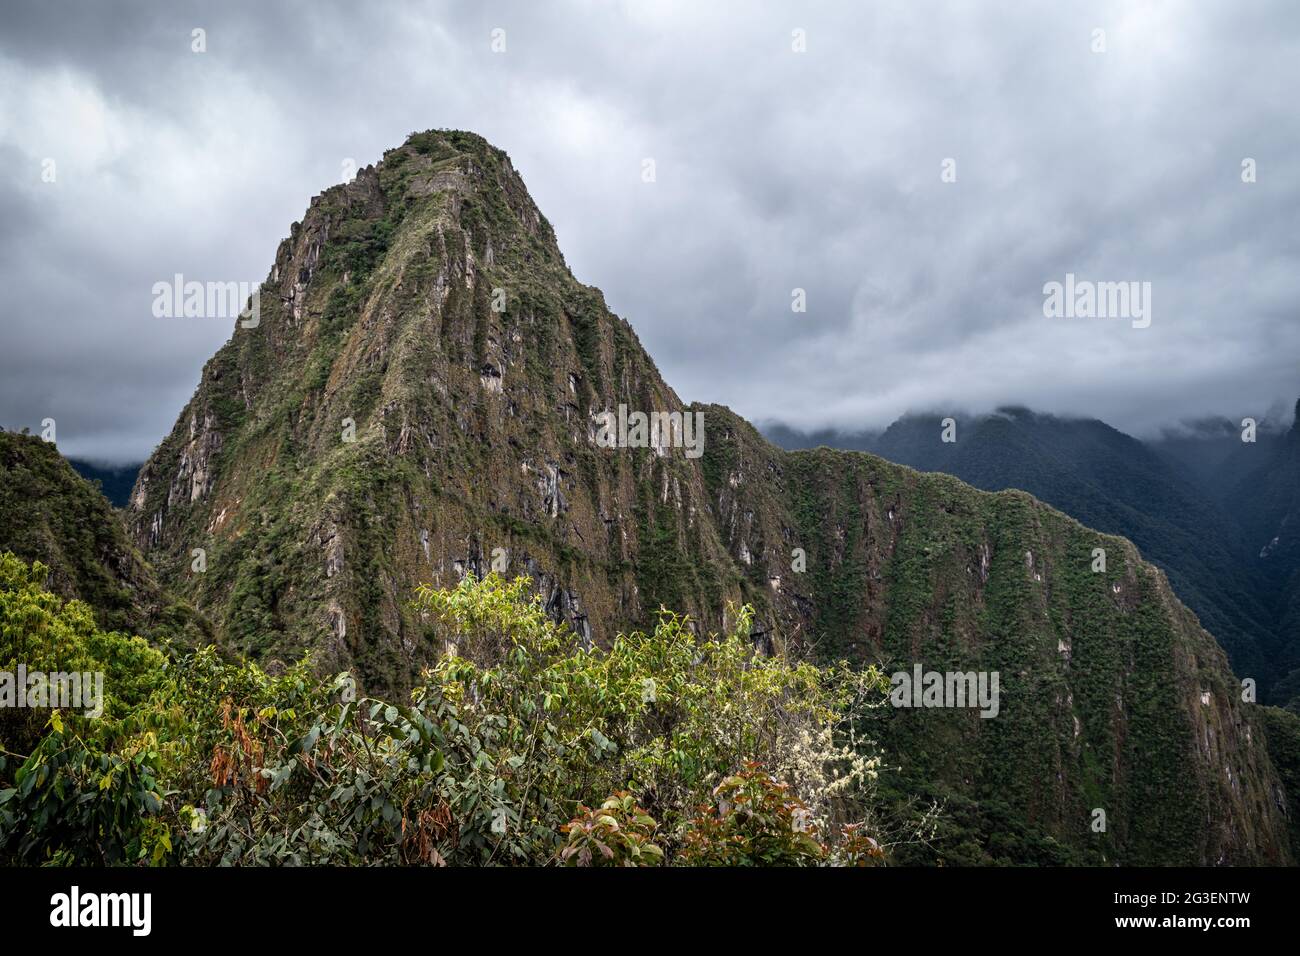 Scenic view of Huayna Picchu against cloudy sky, Machu Picchu, Peru Stock Photo